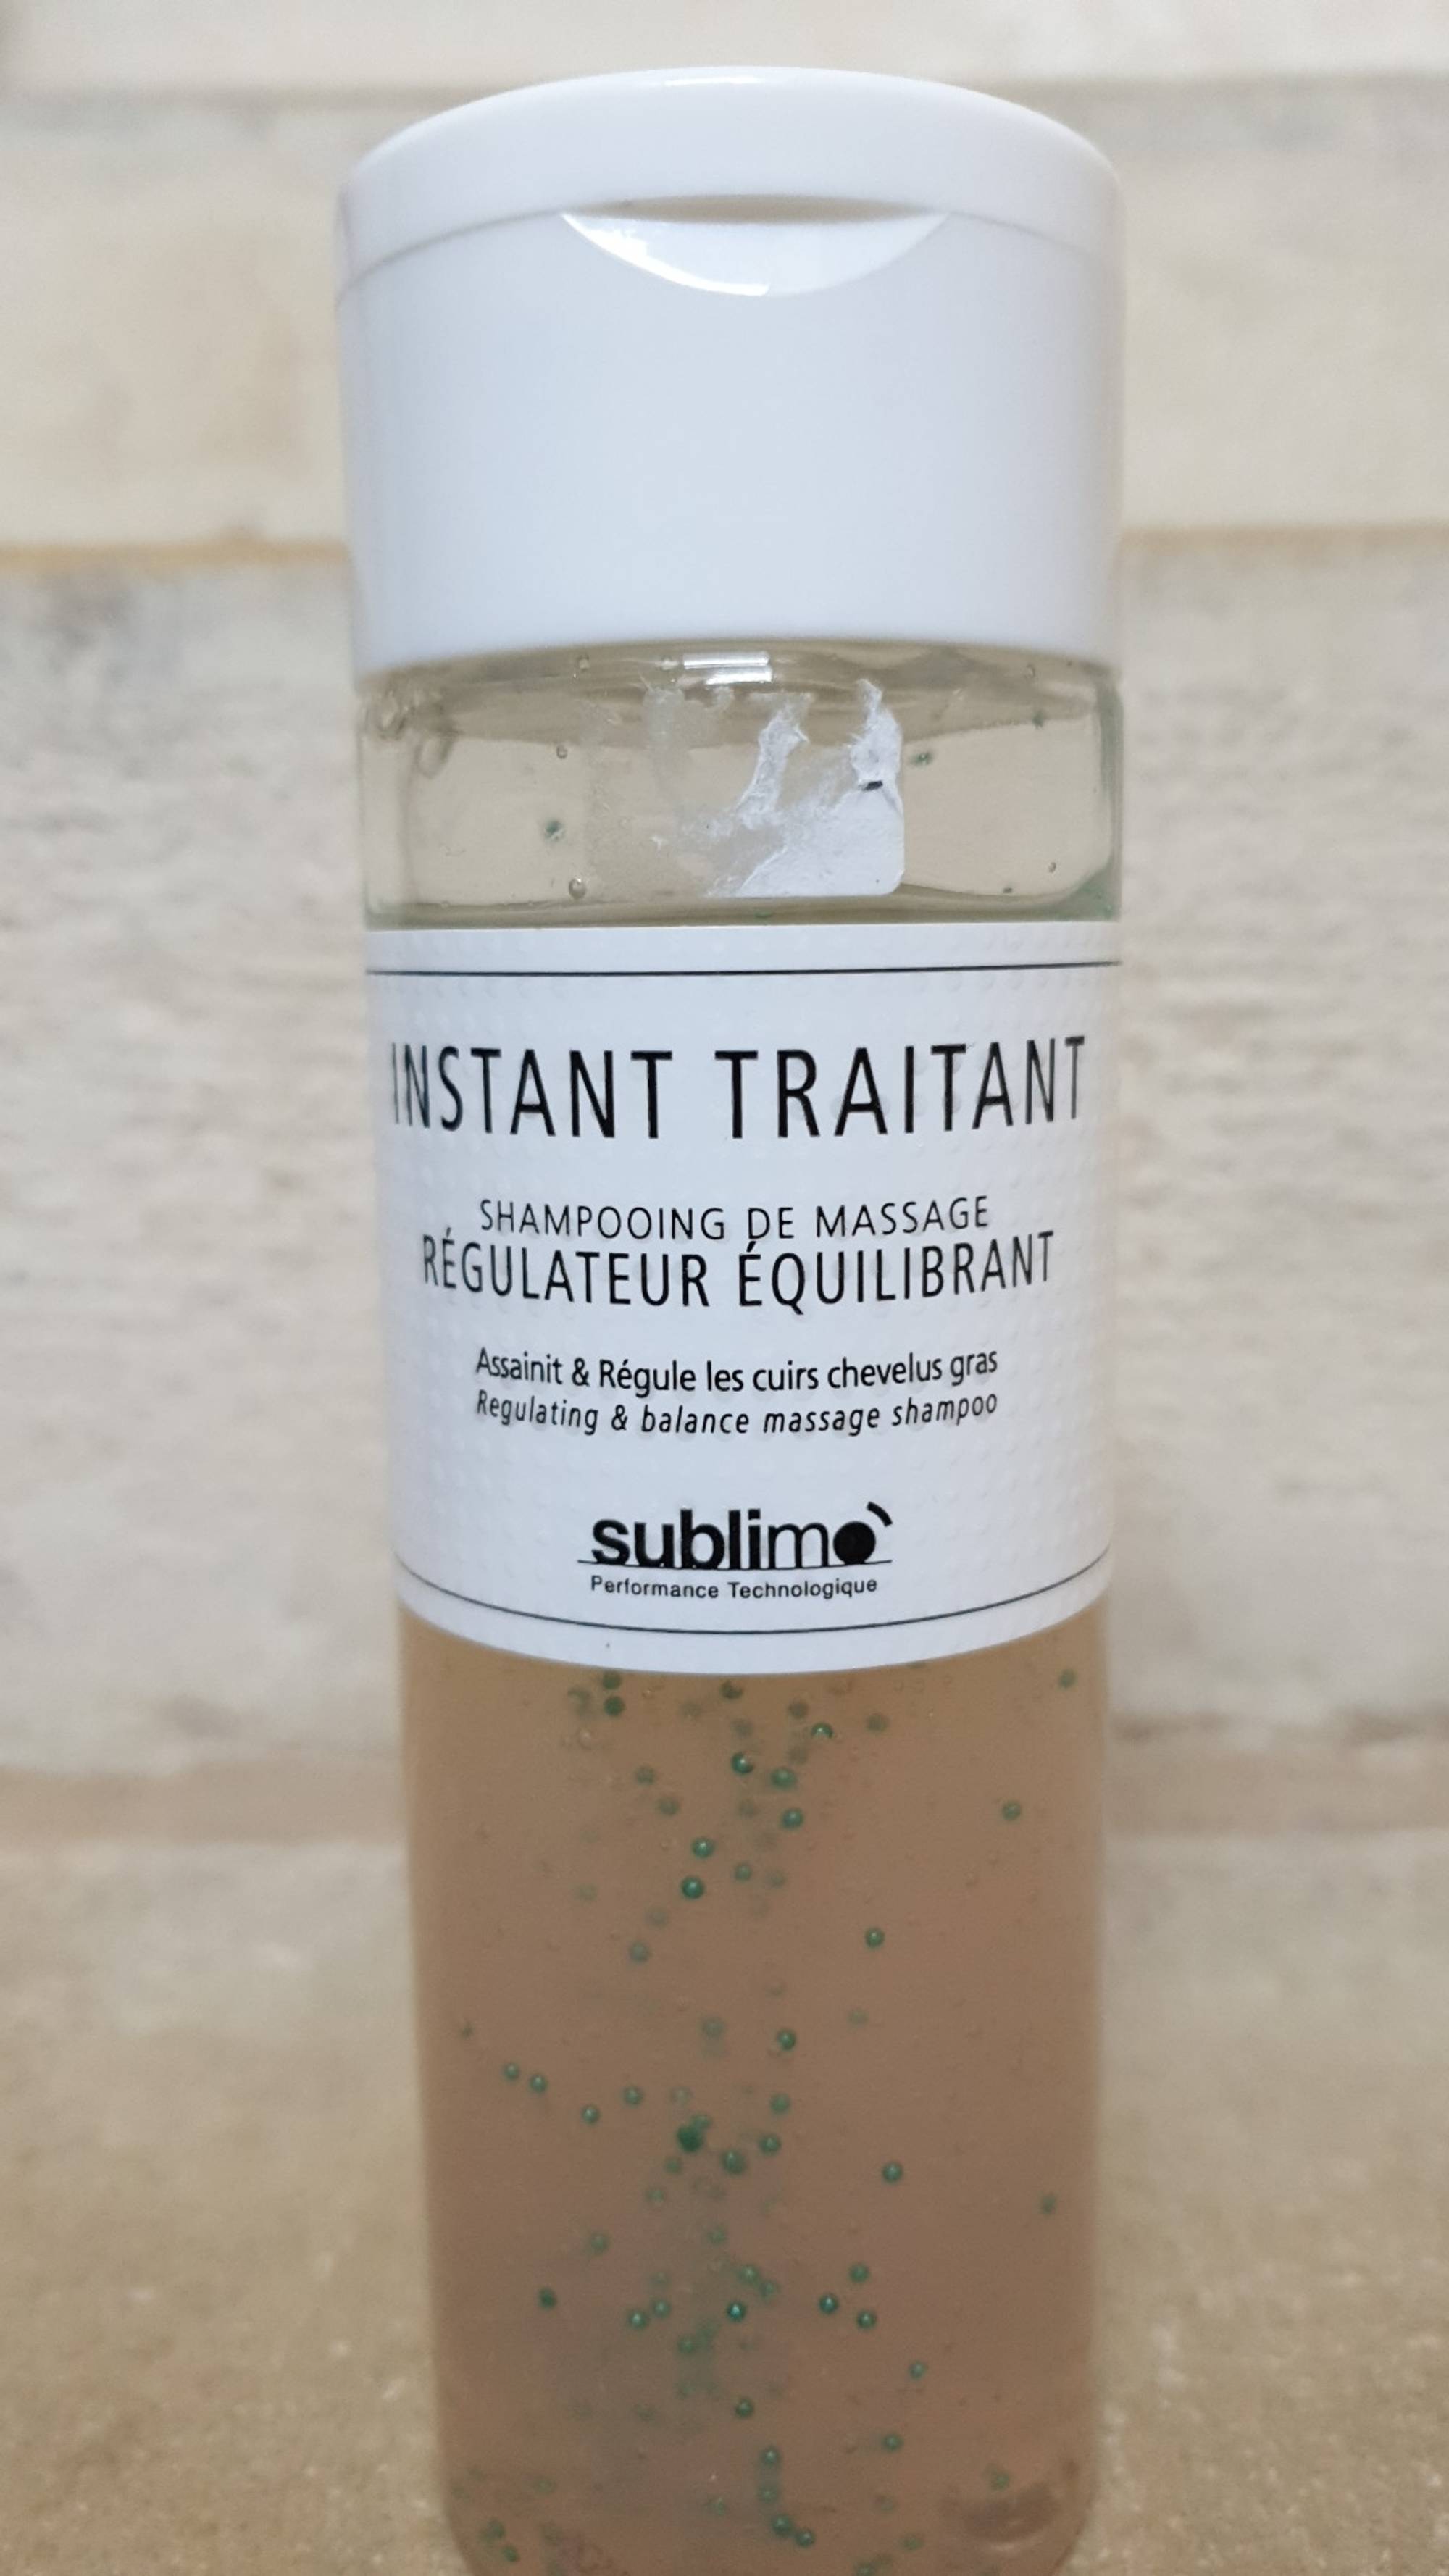 SUBLIMO - Instant traitant - Shampooing de massage régulateur équilibrant